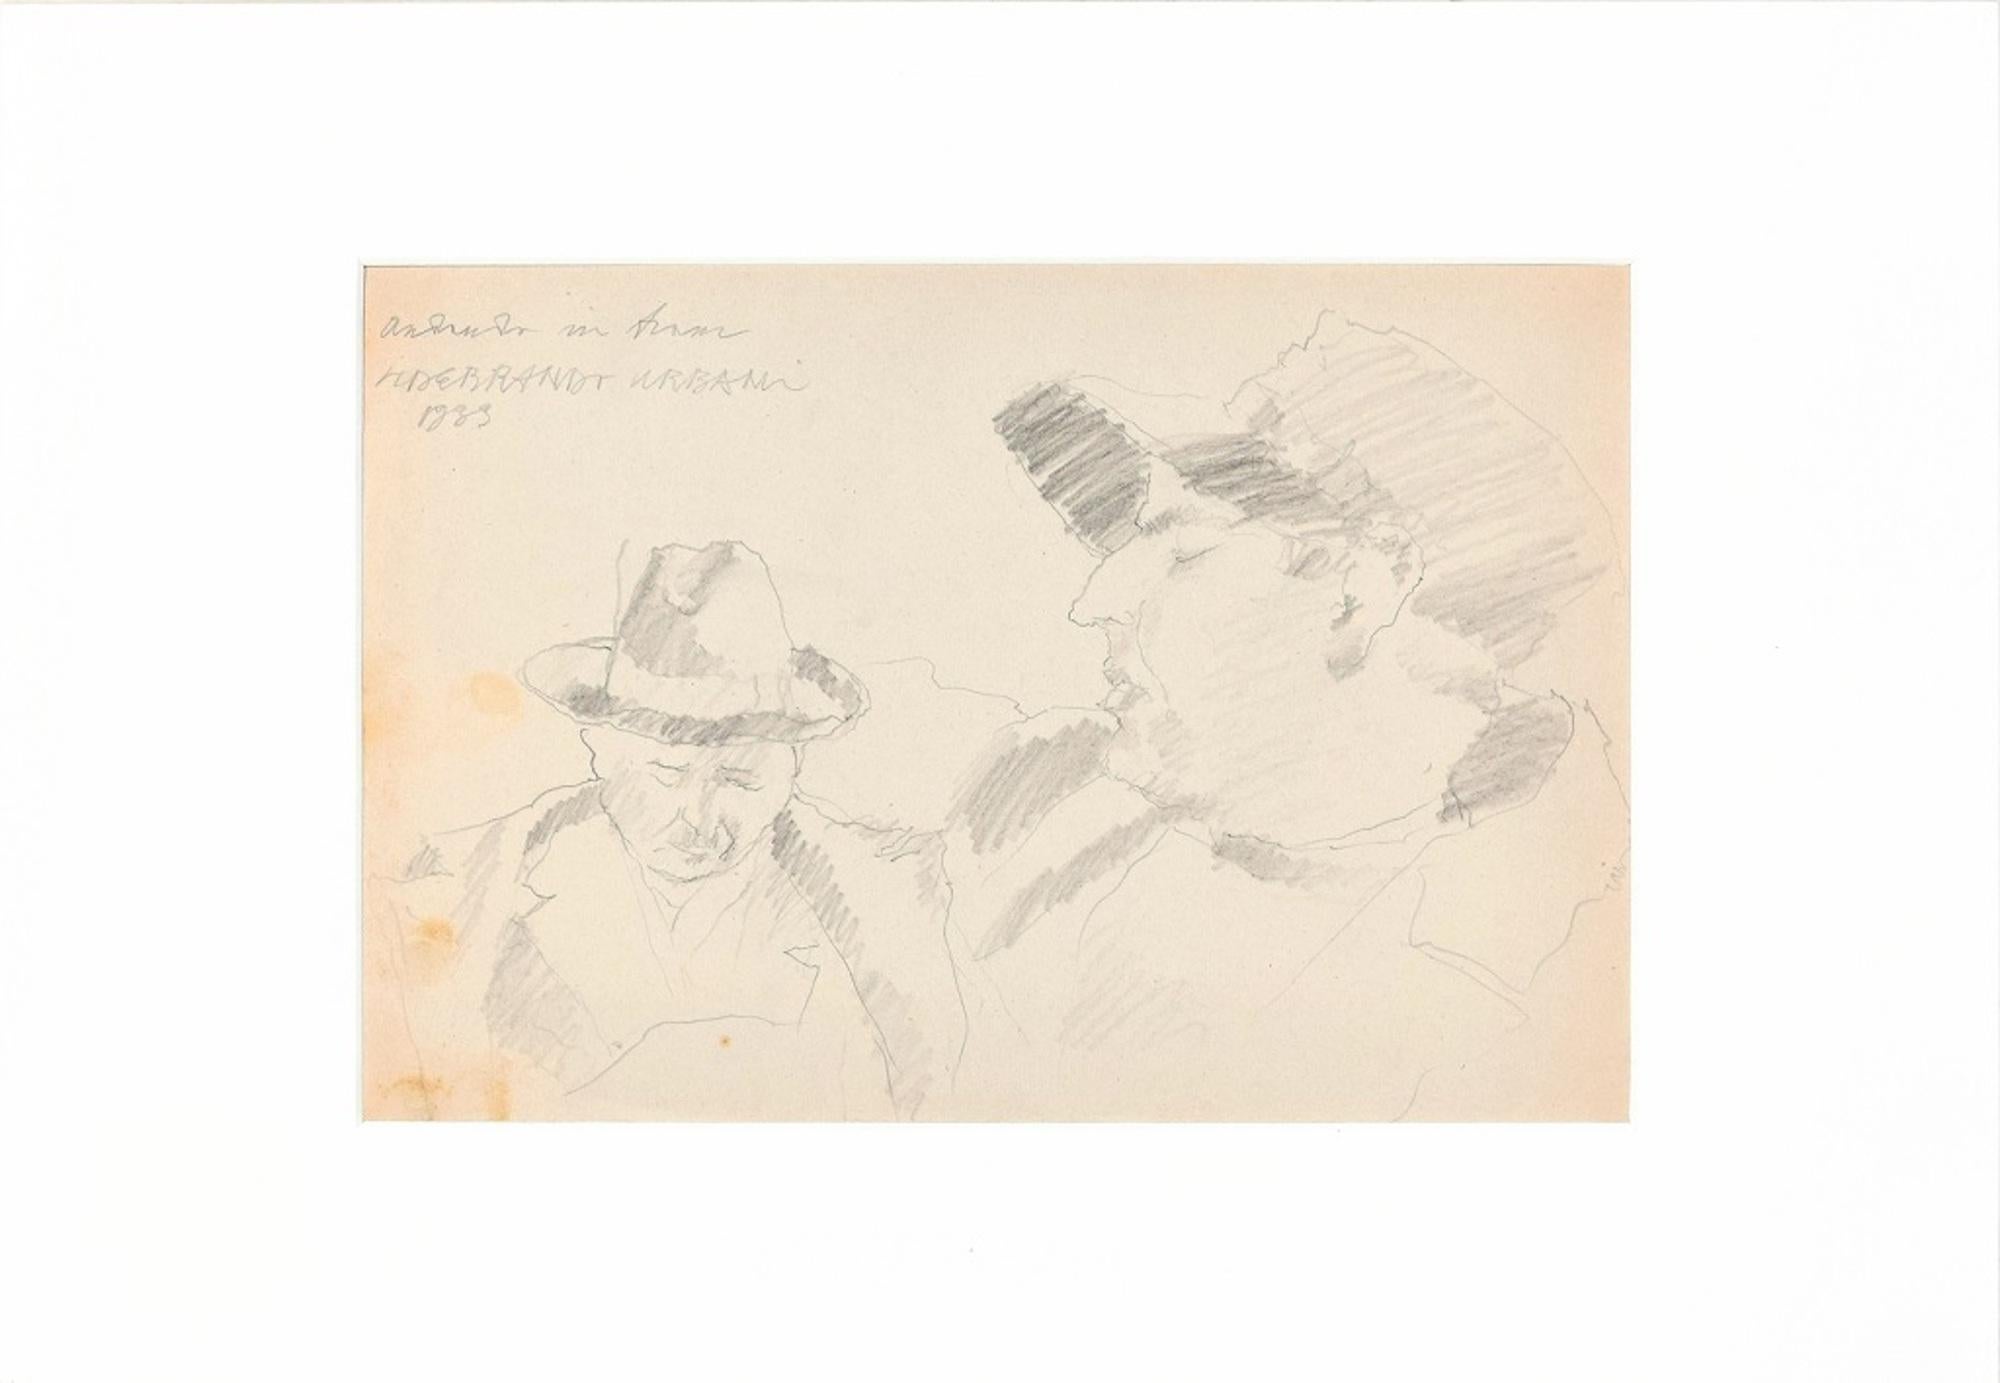 Ritratti (Portraits) - Original Pencil Drawing by Ildebrando Urbani - 1933 For Sale 1